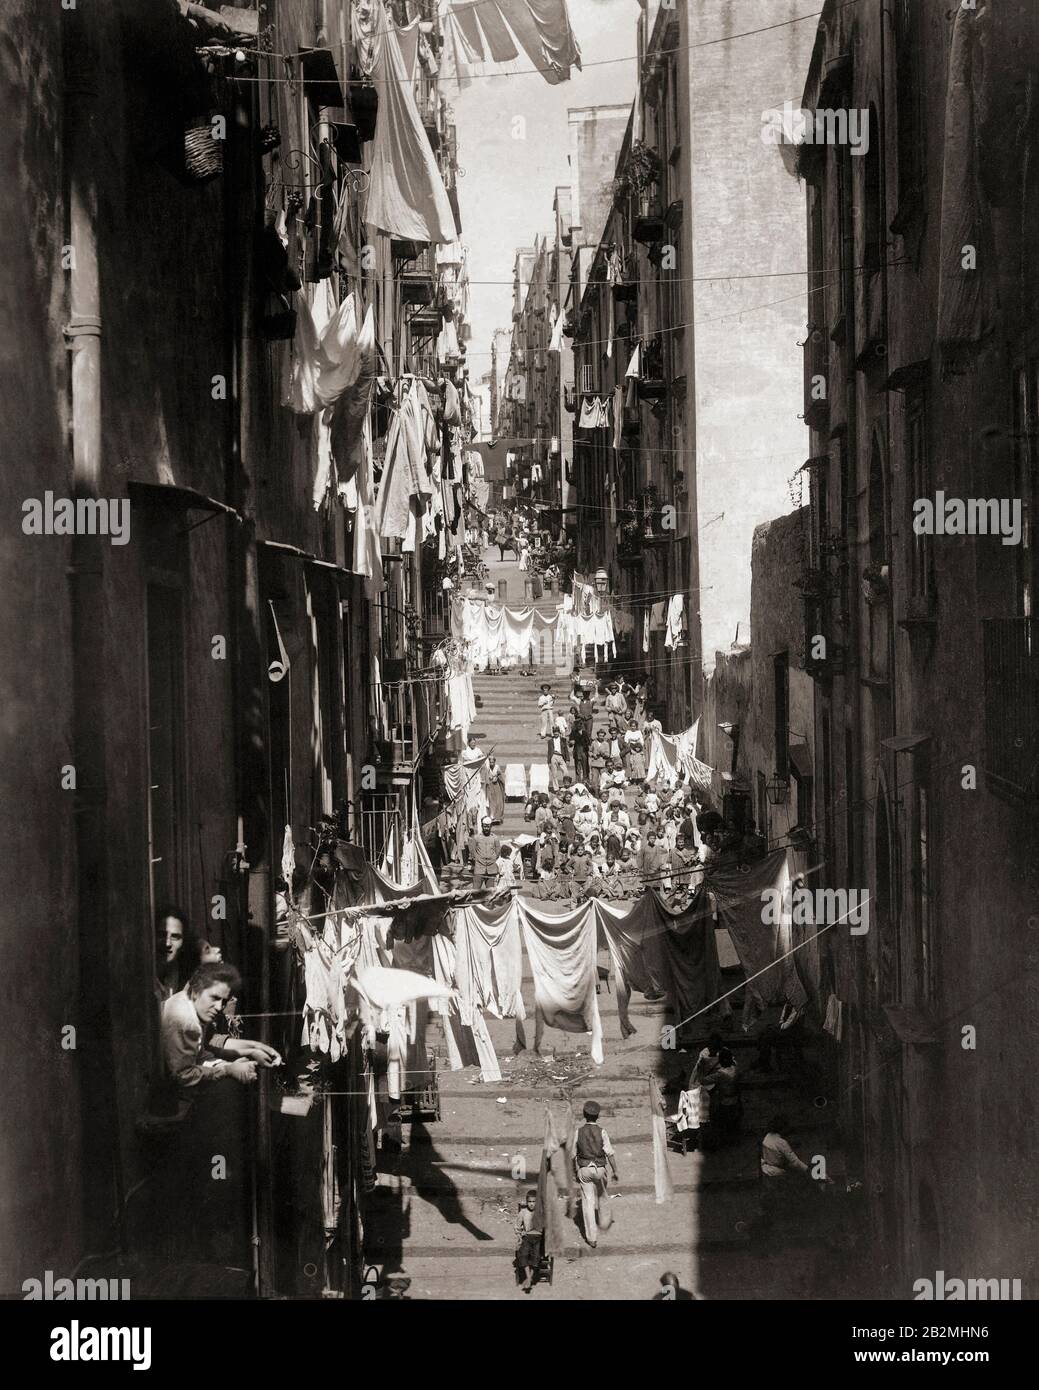 Via Pallonetto S. Lucia in Neapel, Italien, im späten 19. Jahrhundert. Nach einer Arbeit des deutschen Fotografen Giorgio Sommer, 1834-1914 Stockfoto